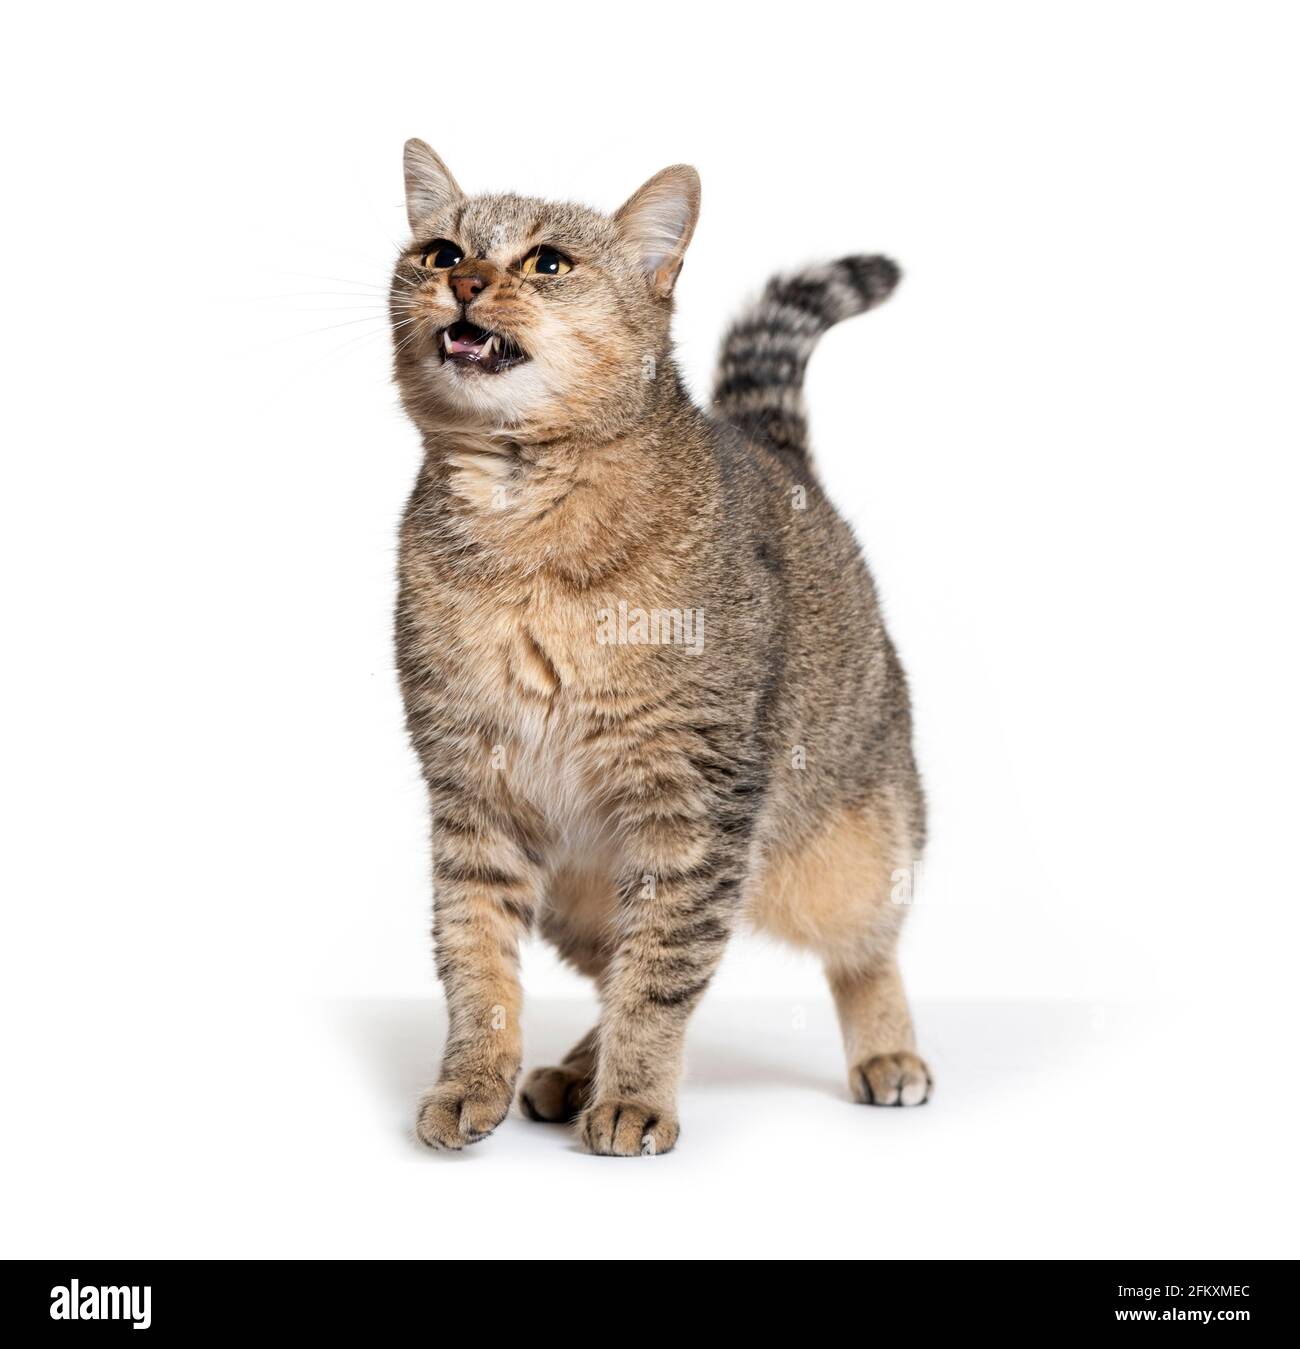 Angry cat Stock Photo by ©atveretinova 40828153